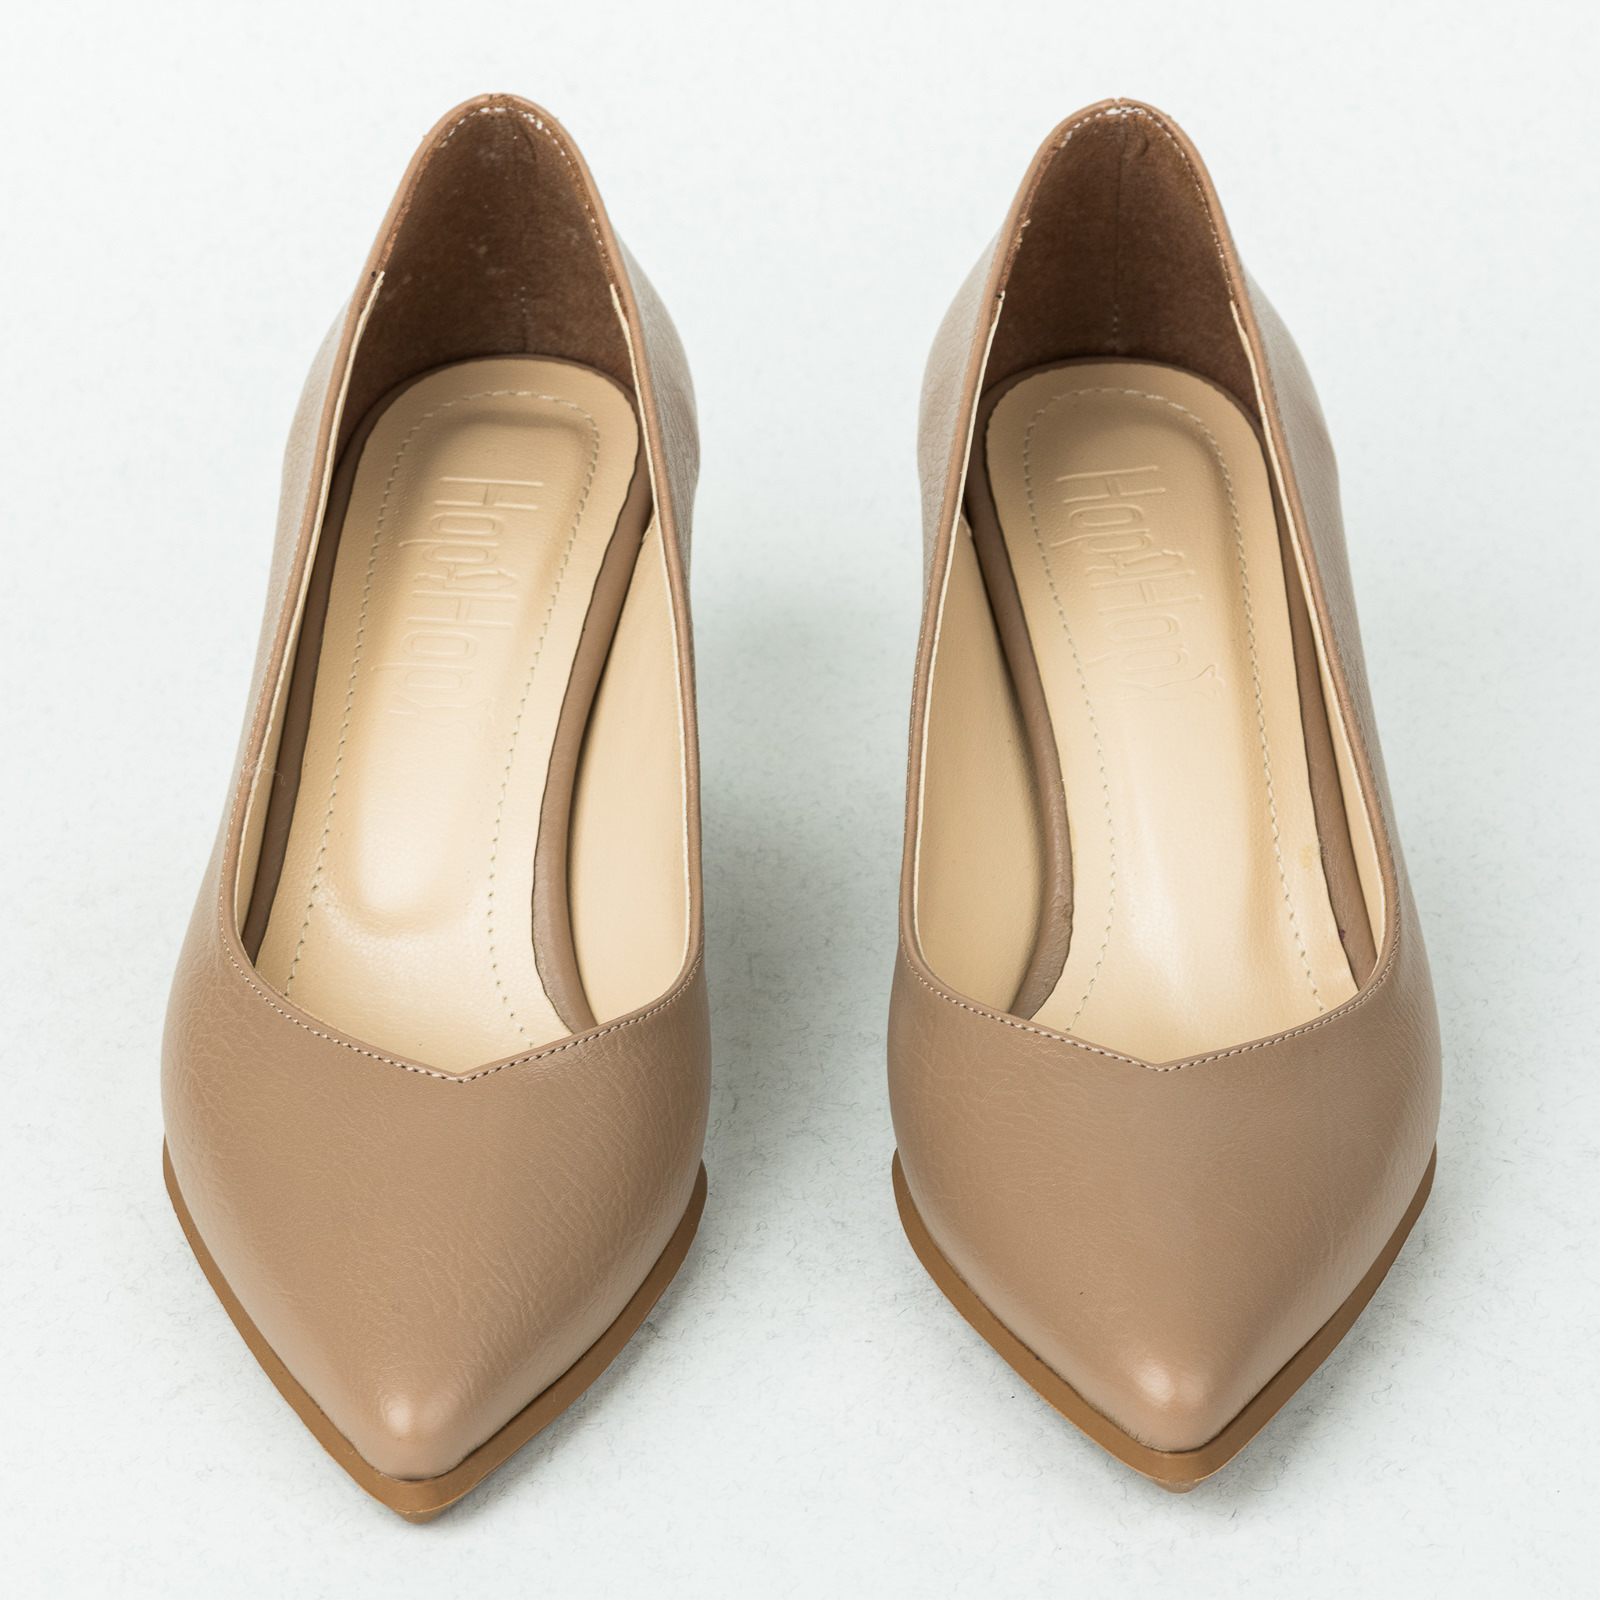 High-heels B257 - BEIGE